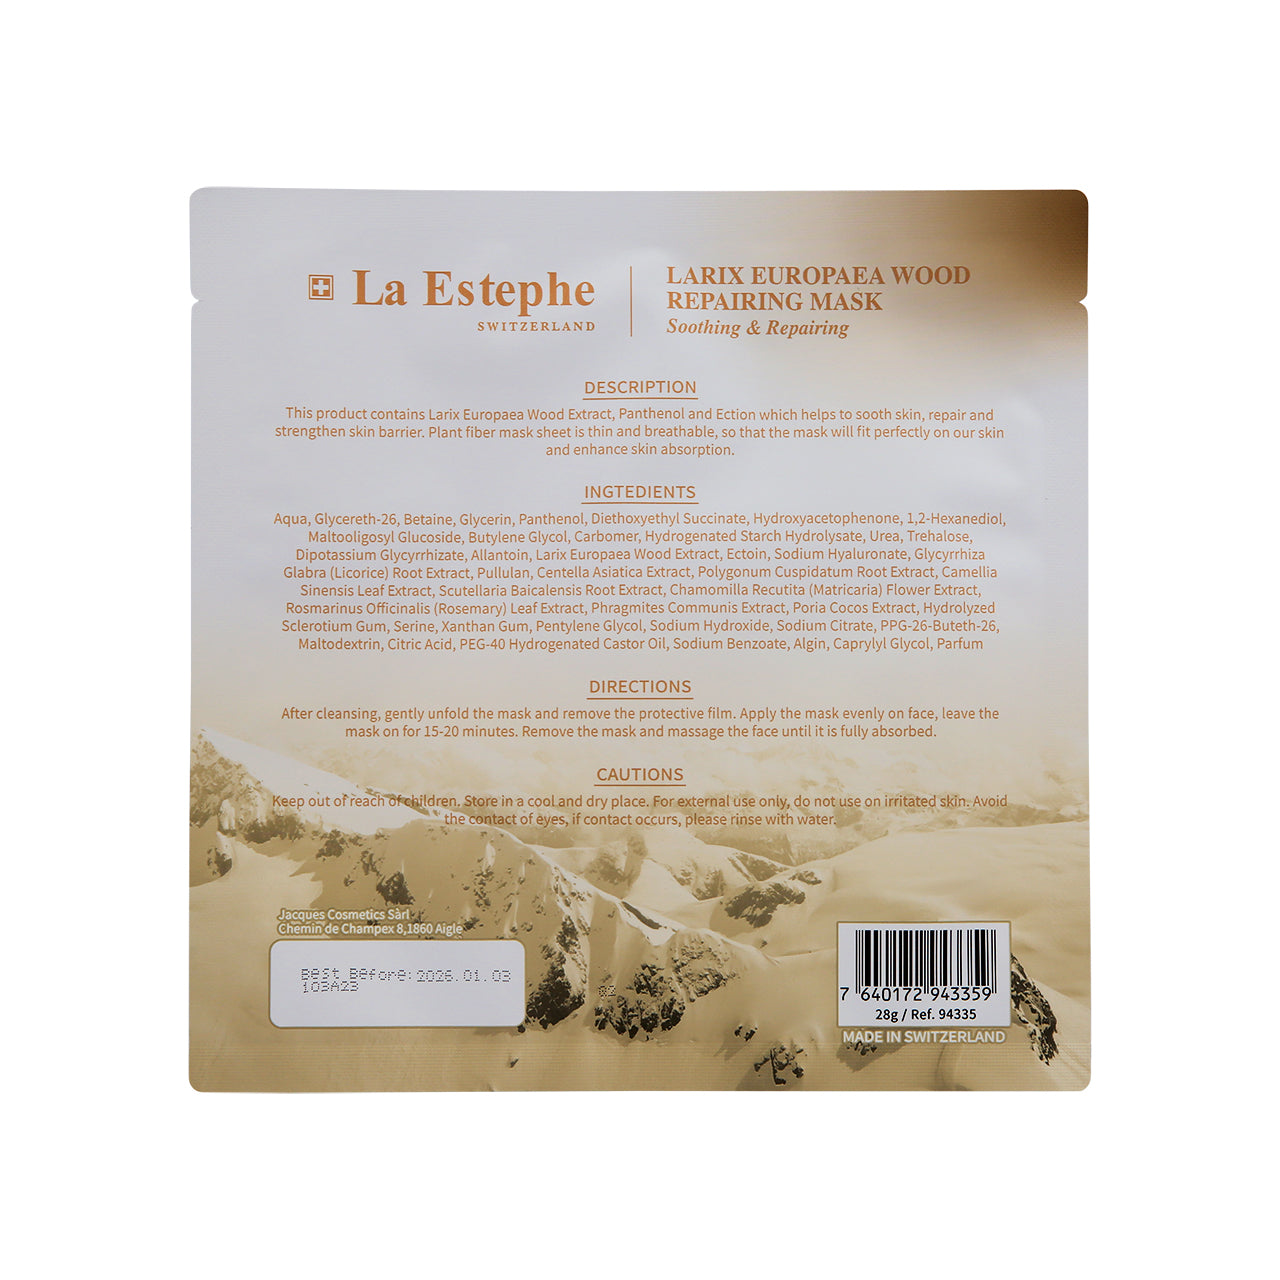 La Estephe Larix Europaea Wood Repairing Mask 6pcs | Sasa Global eShop